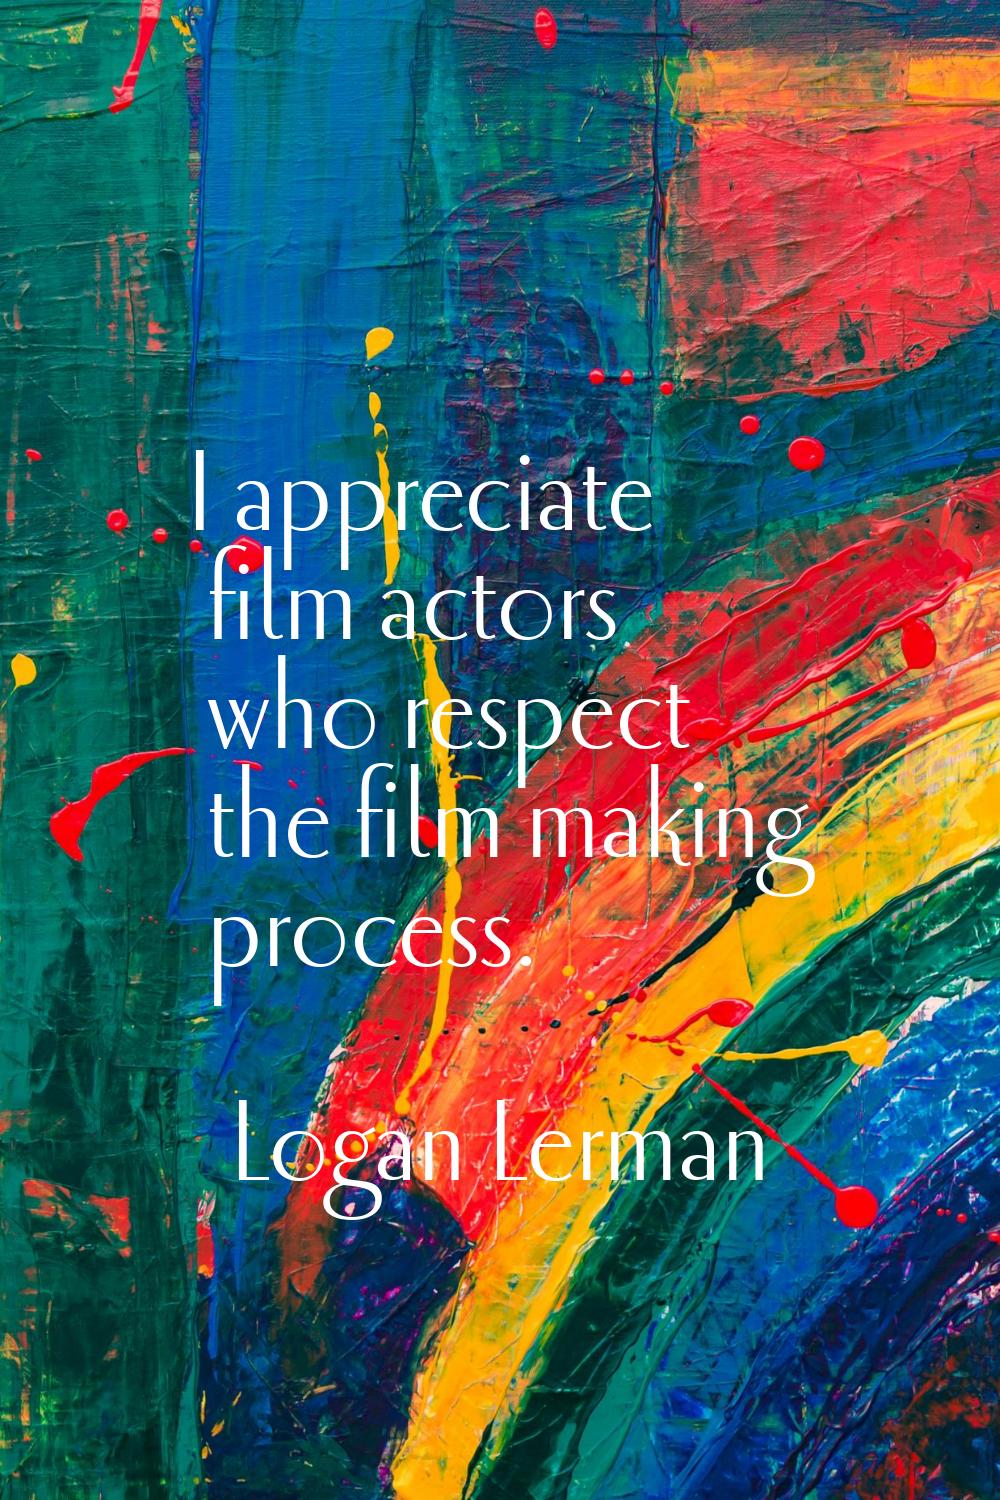 I appreciate film actors who respect the film making process.